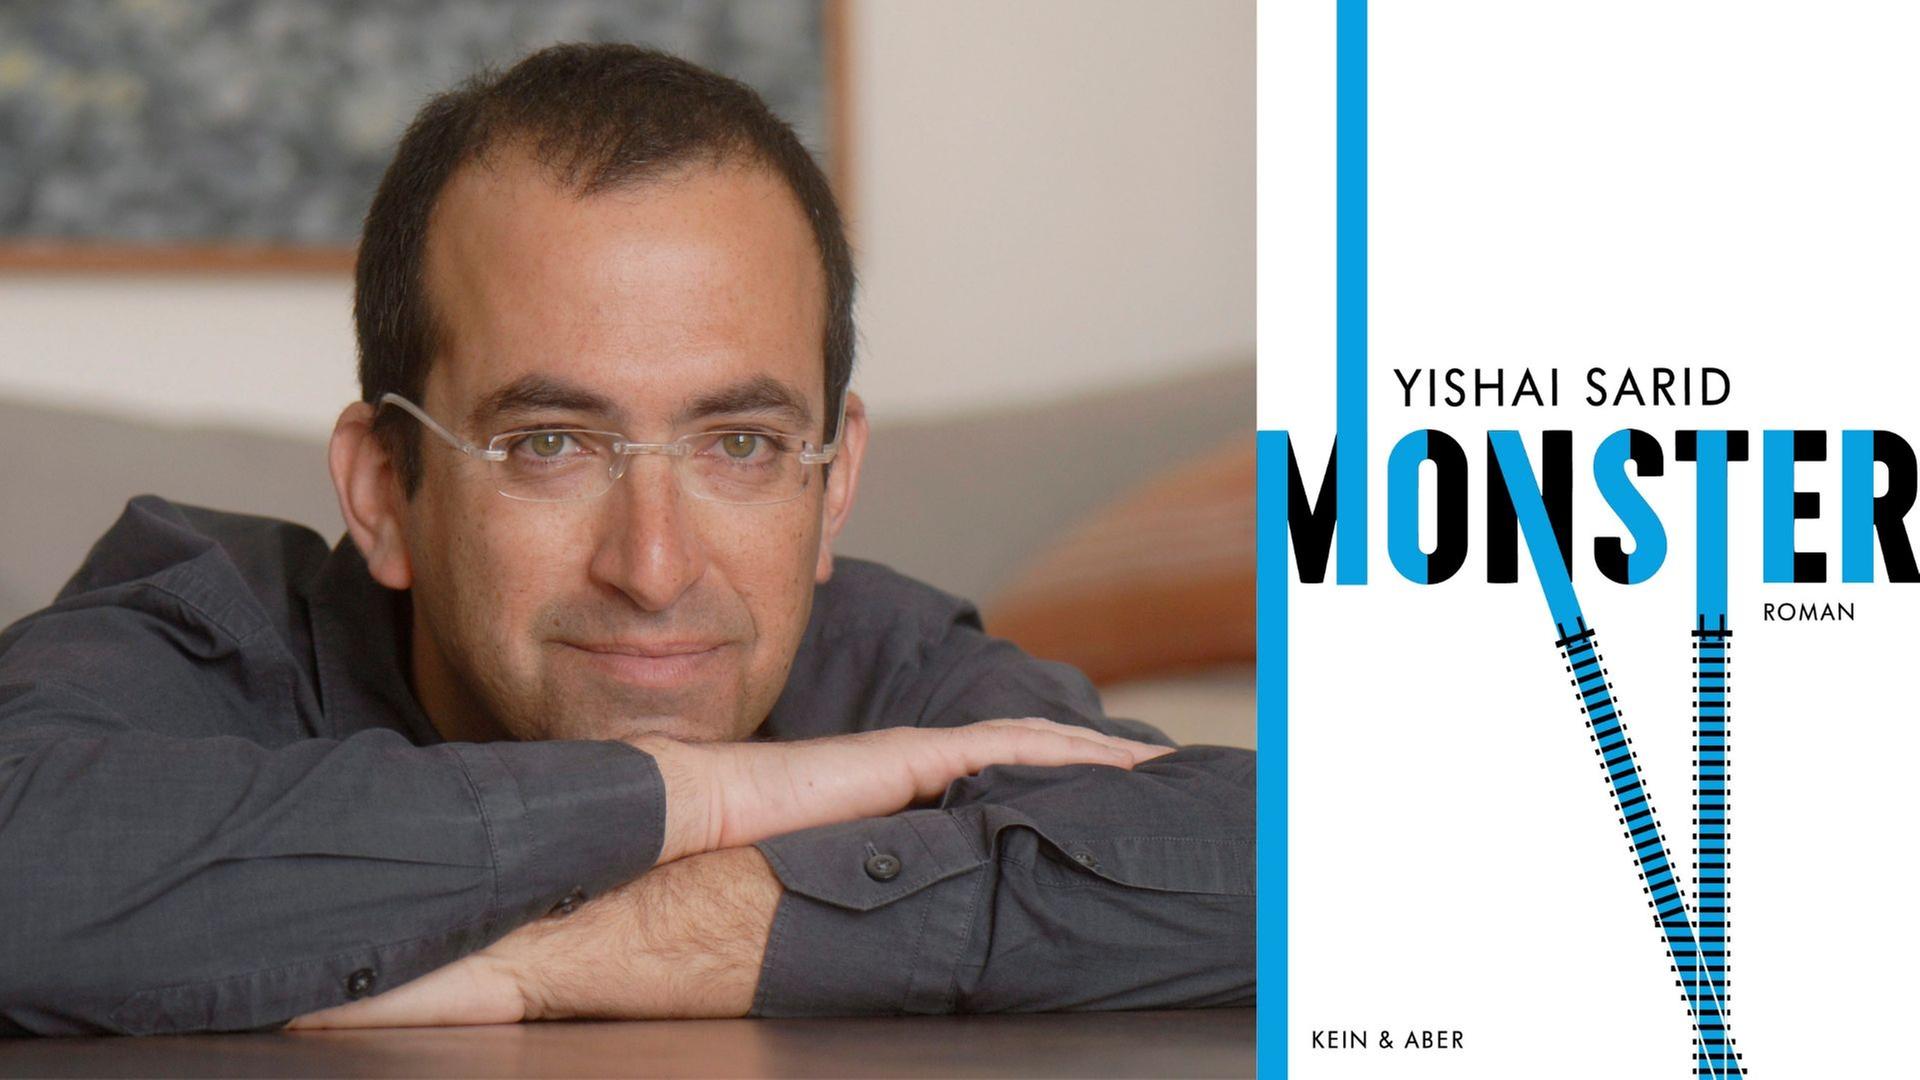 Zu sehen ist der Autor Yishai Sarid und sein Roman "Monster".